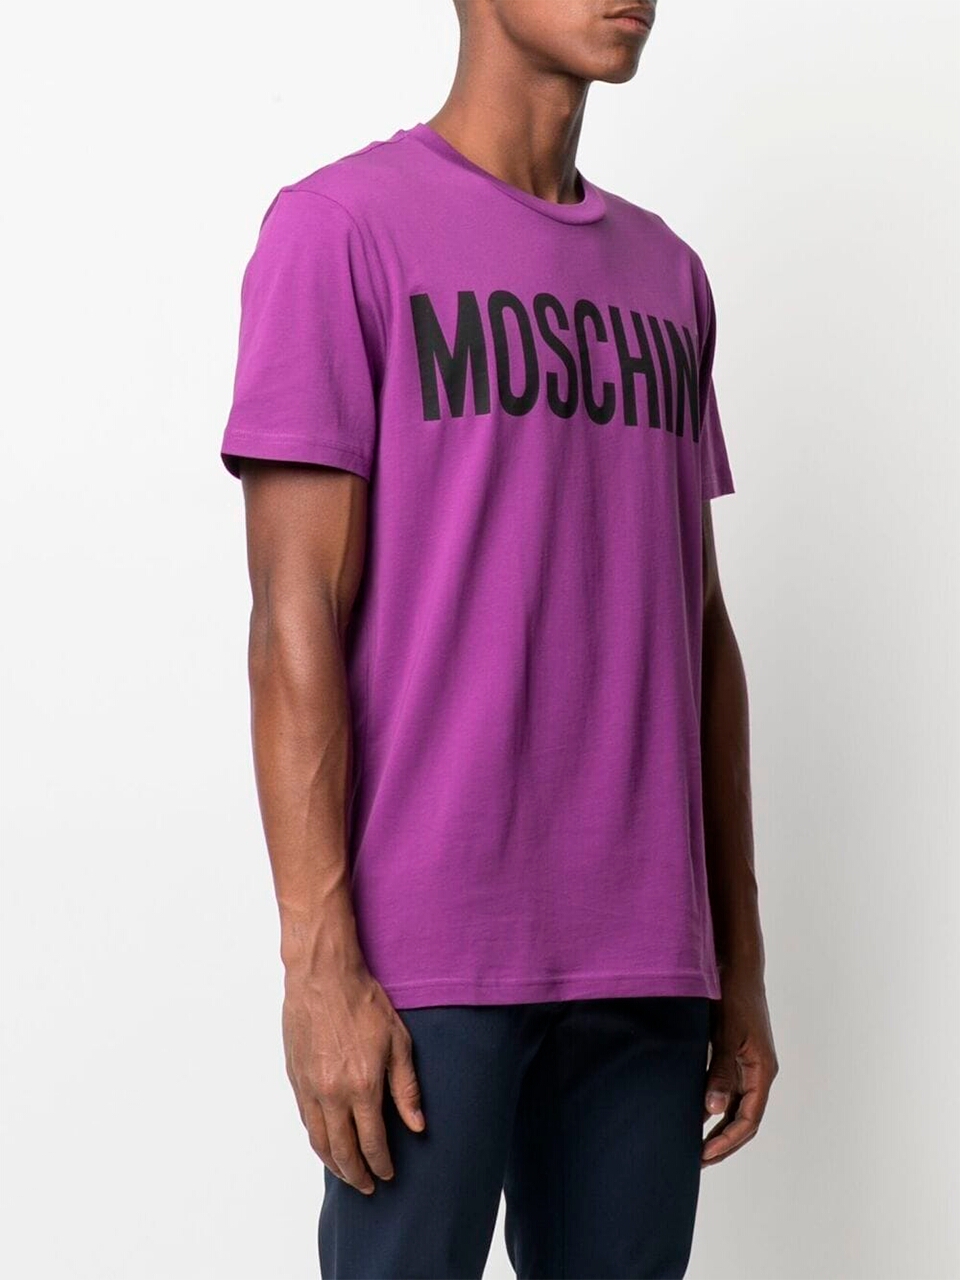 Imagem de: Camiseta Moschino Roxa com Logo Preto